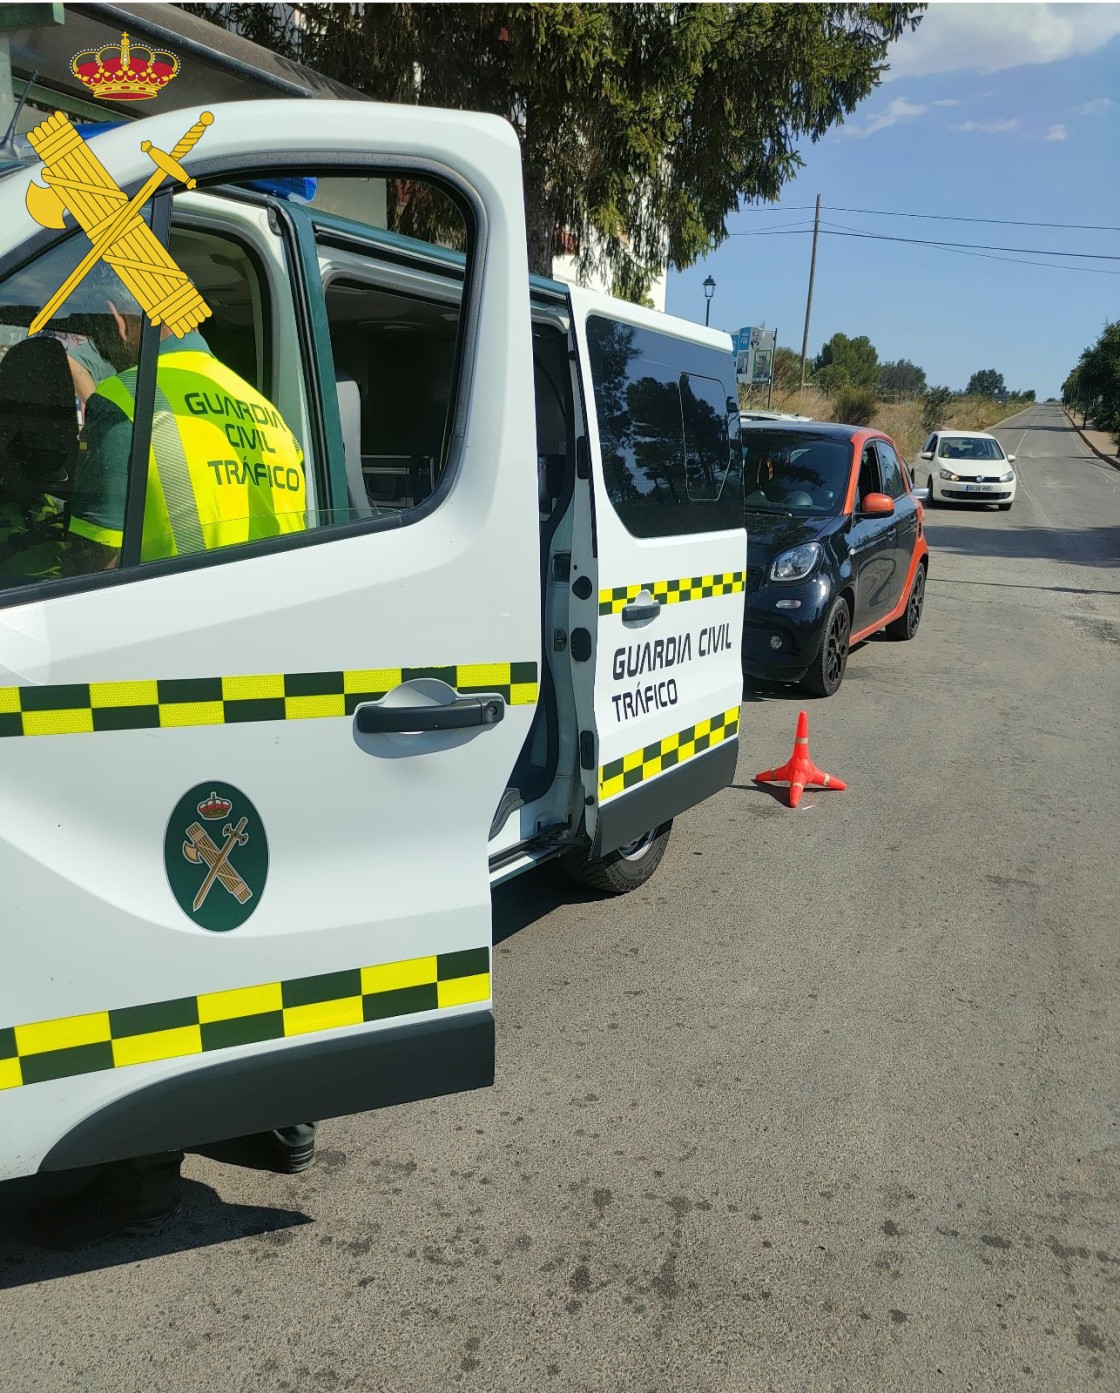 La Guardia Civil de Teruel sorprende a un conductor multirreincidente en delitos contra la seguridad vial por circular con el permiso retirado por resolución judicial